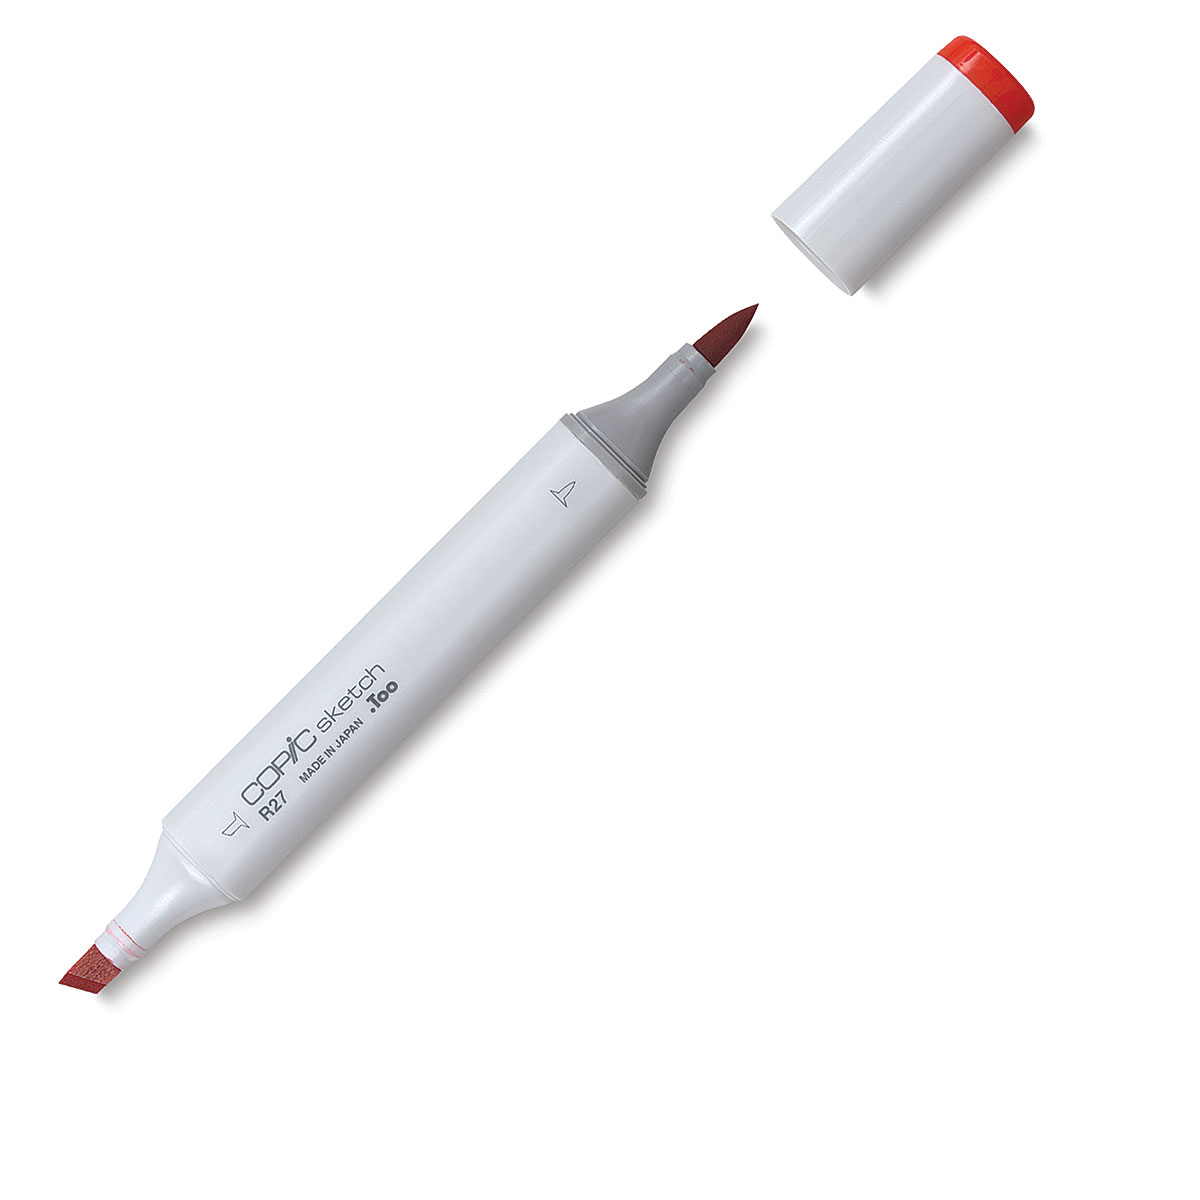 Copic - Sketch Marker - Bisque - E30